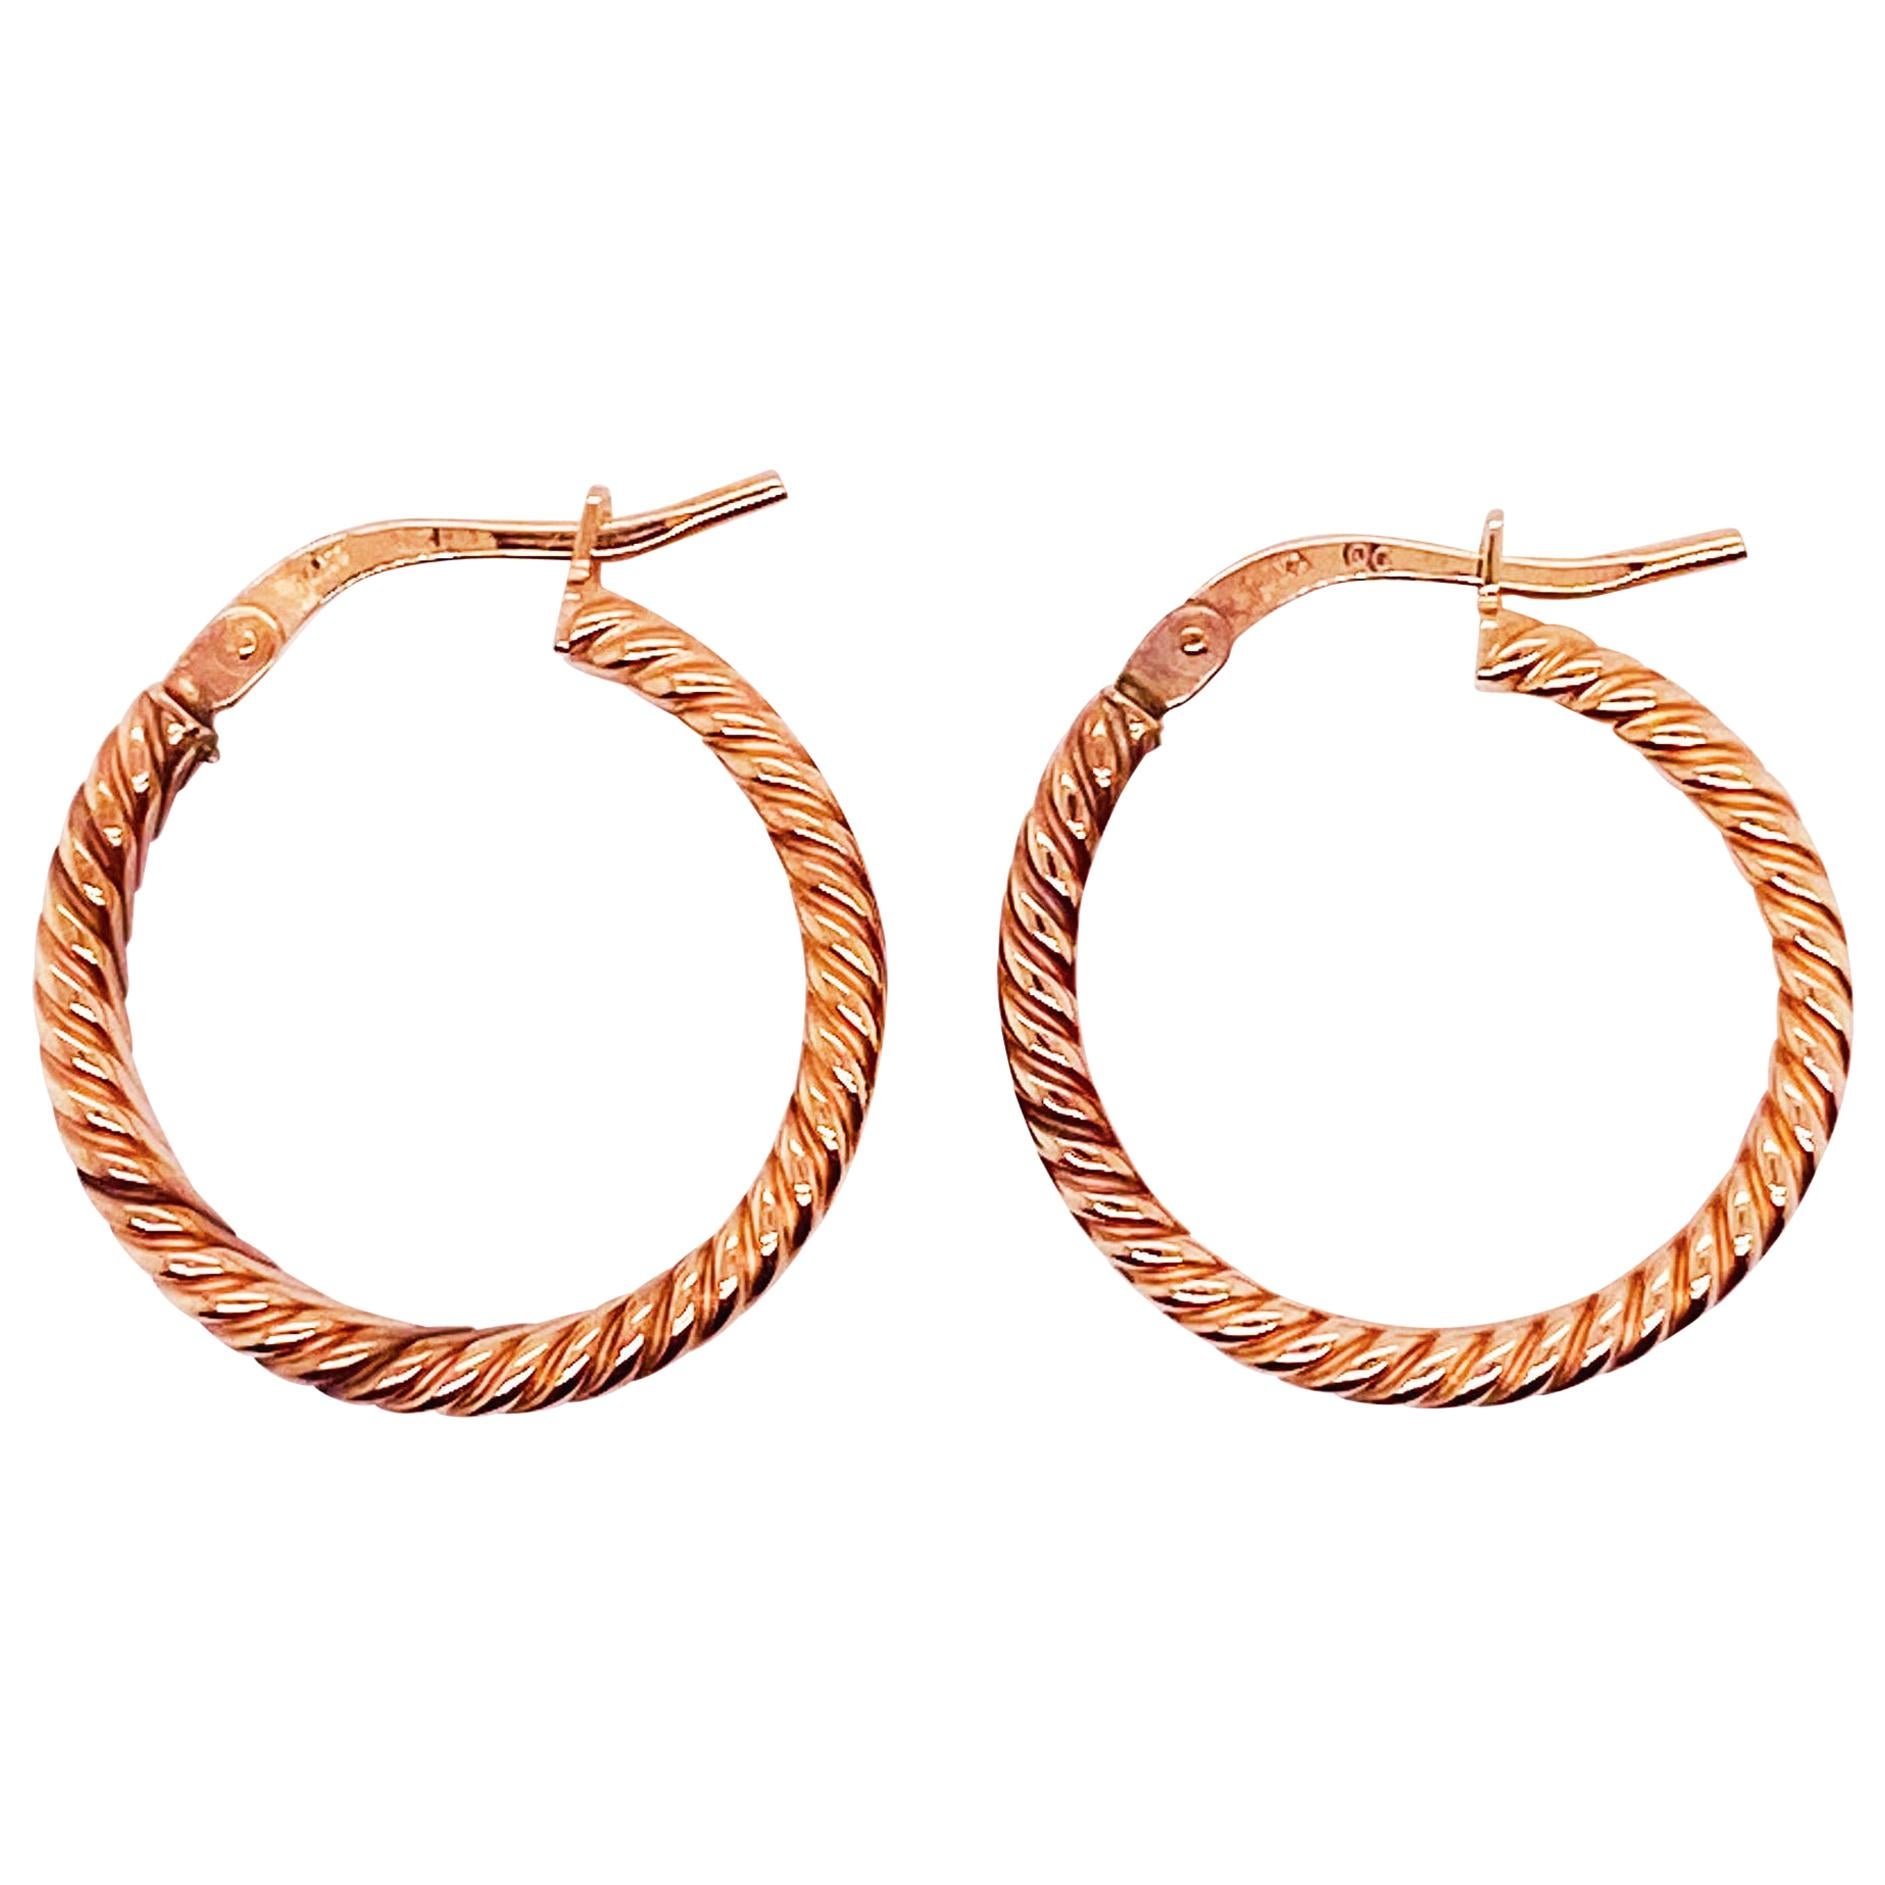 Rope Earrings, 14 Karat Rose Gold 18 mm x 3 mm Designer Hoop Earrings